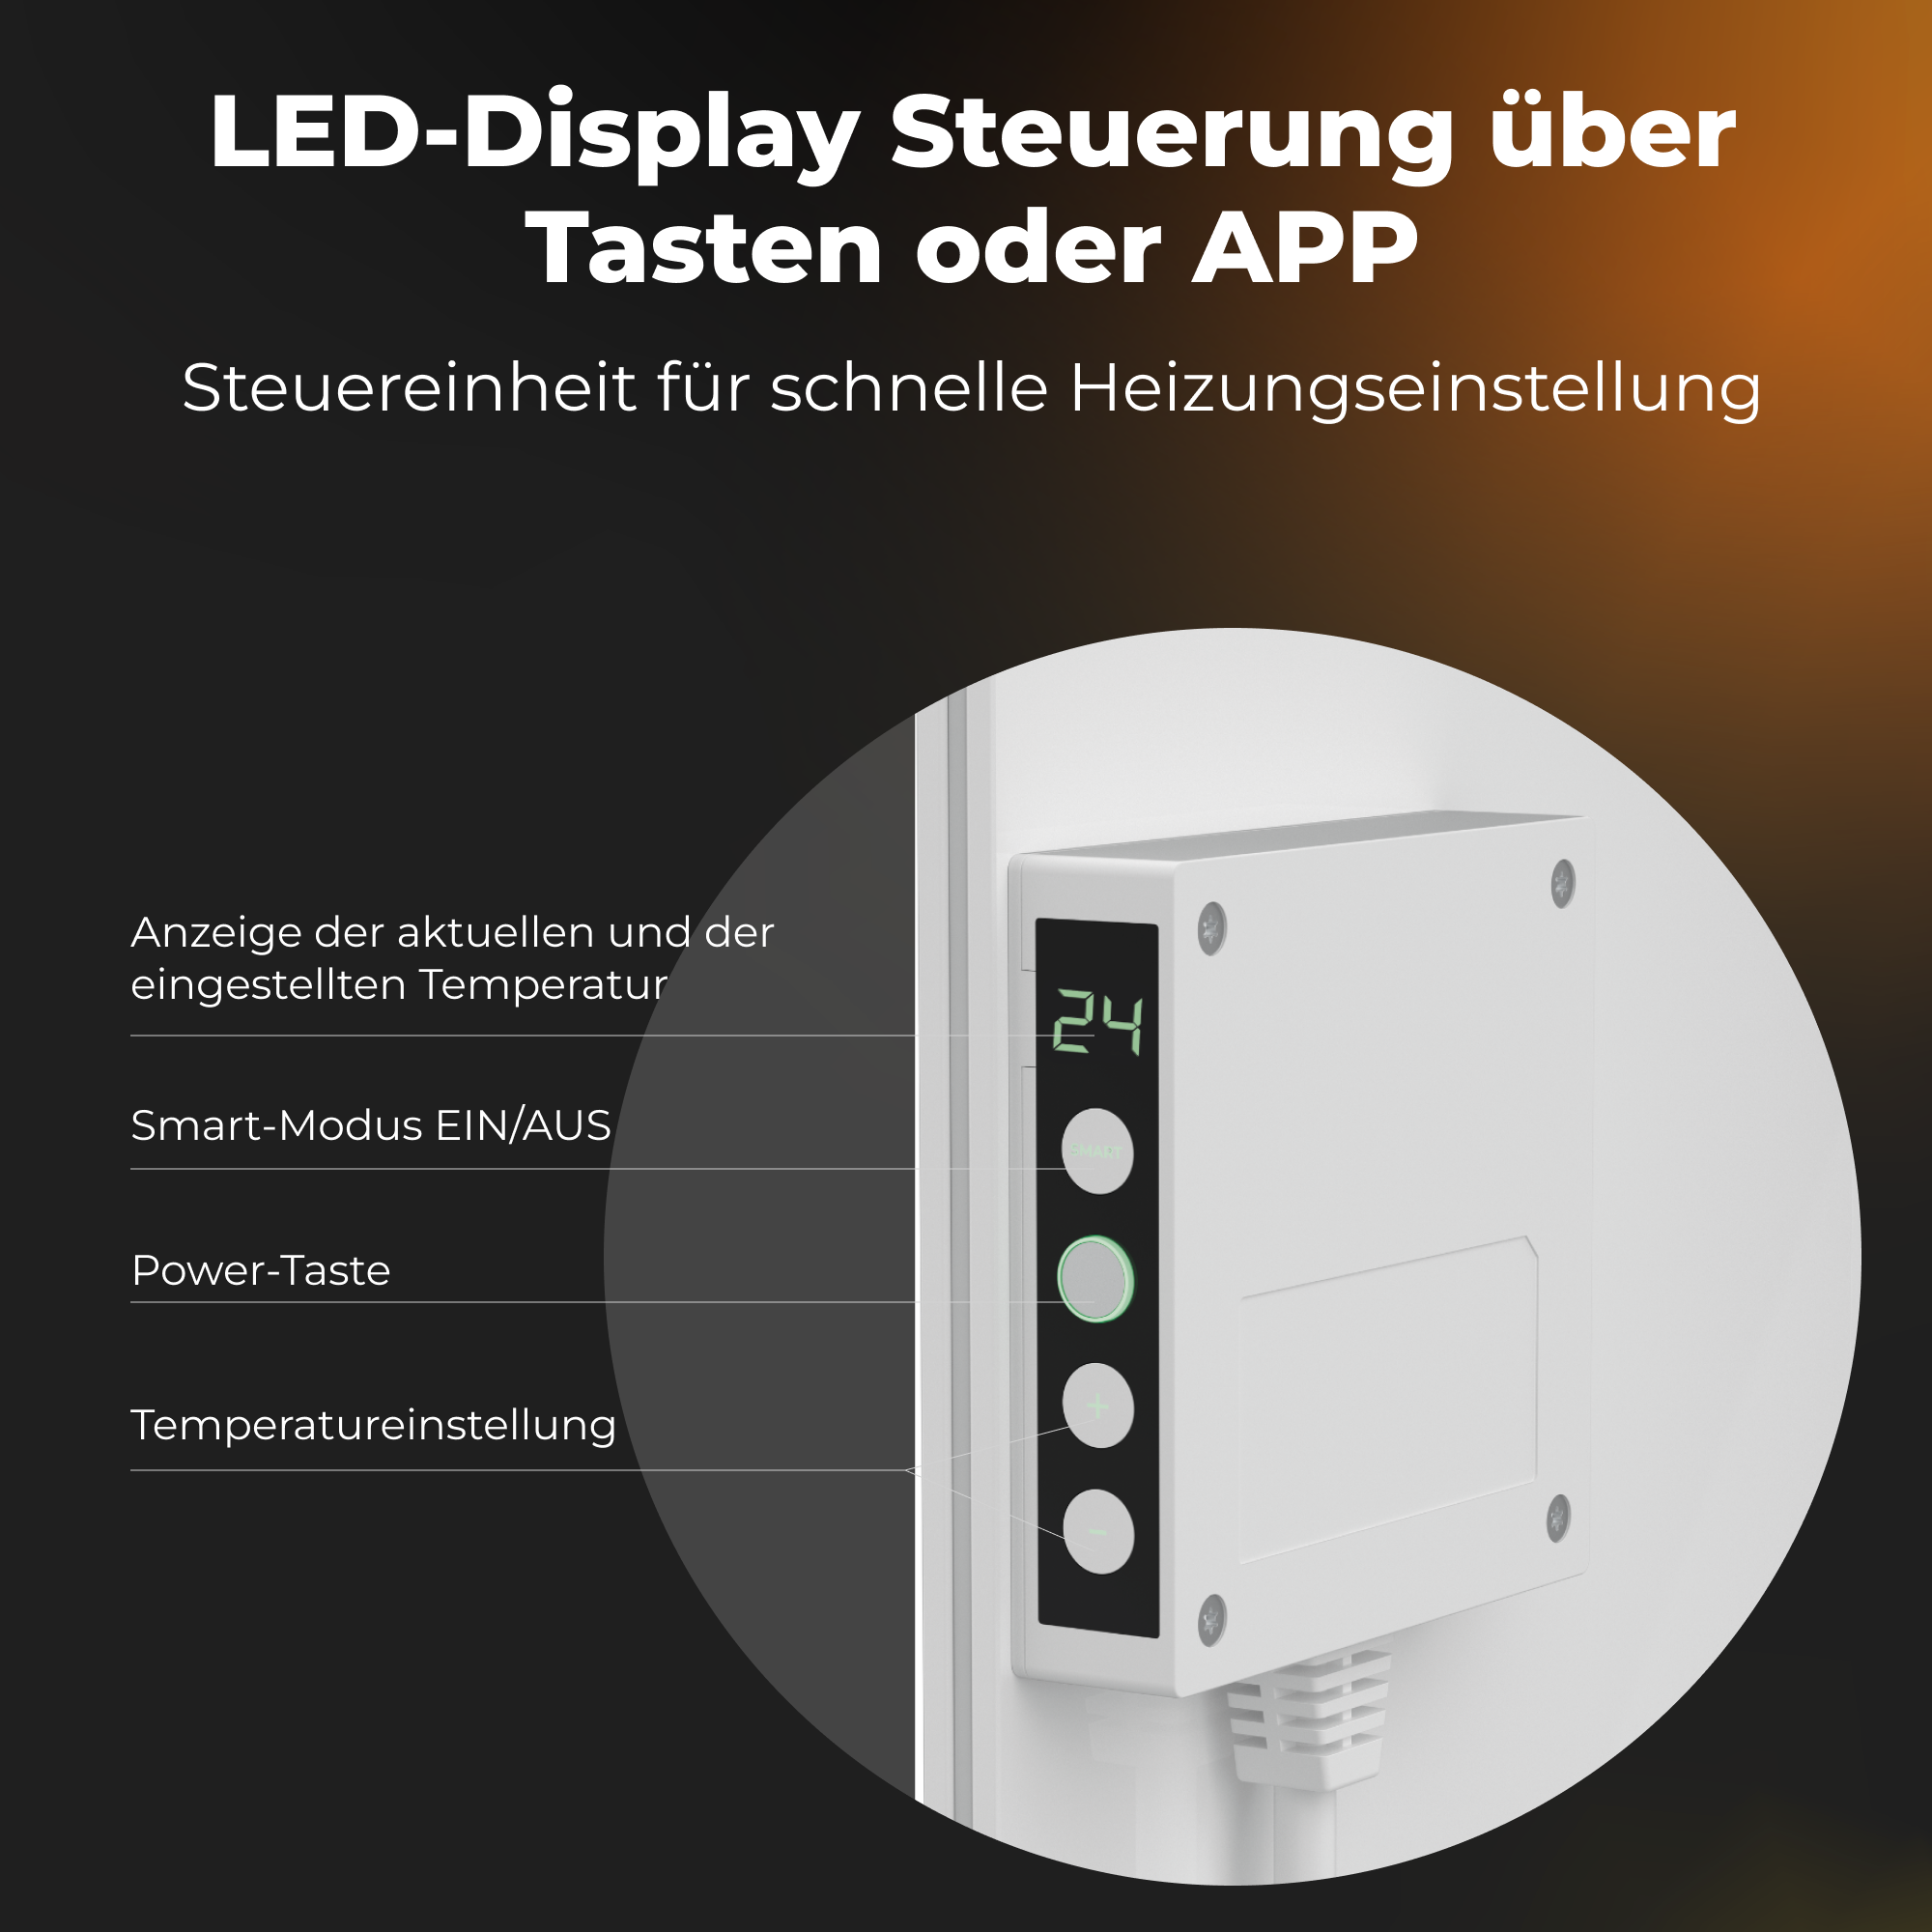 LED-Heizung Boden Watt) energiesparend, W, Premium GH3S, Eco Smart Infrarot-Heizstrahler AENO (700 700 & gehärtetes Wandmontage Glas,